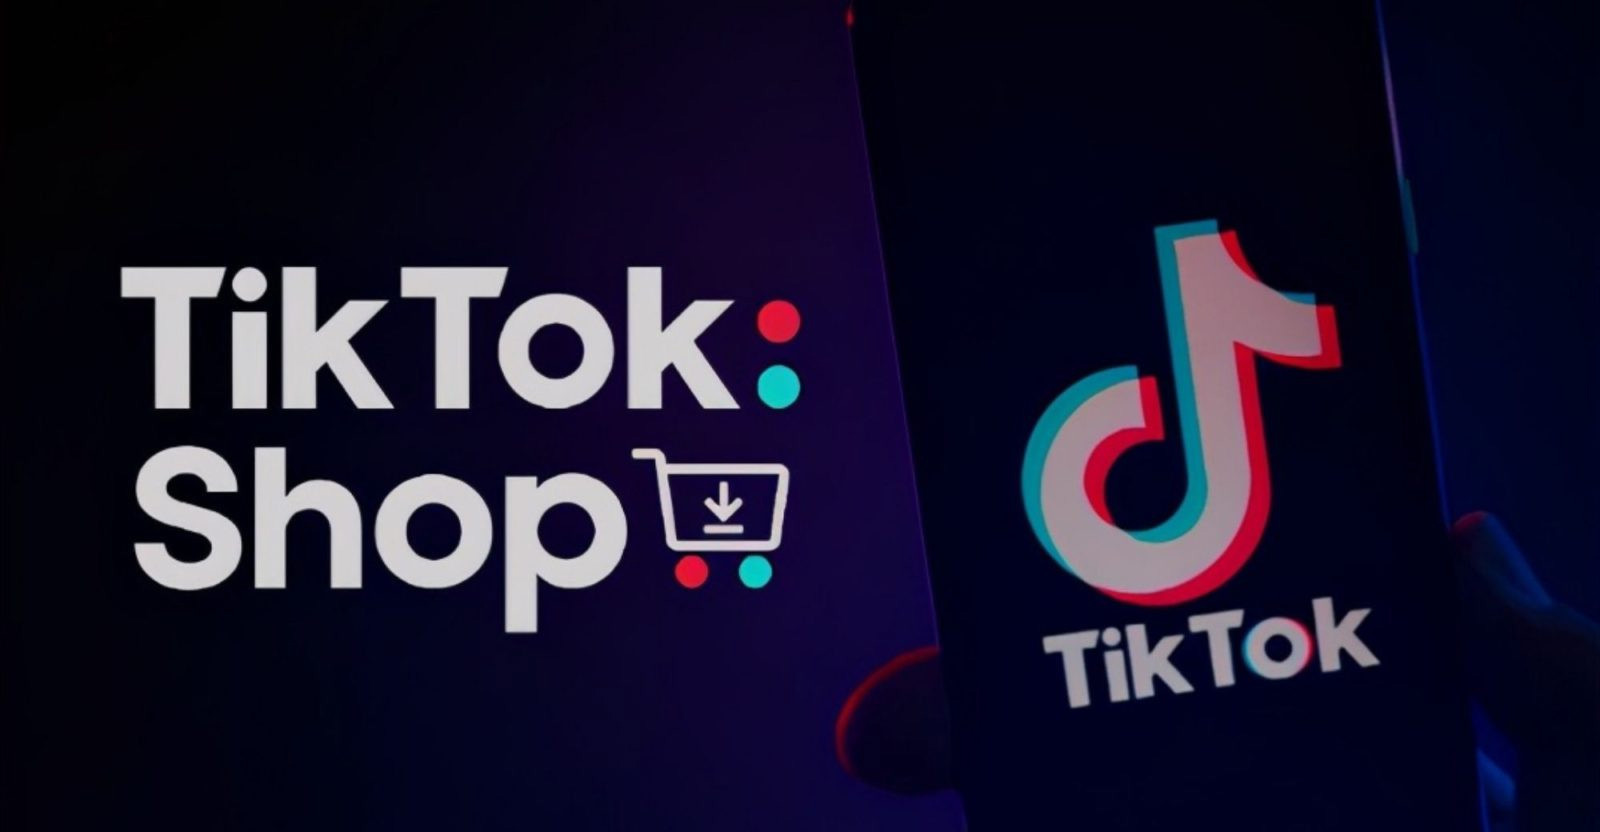 TikTok Shop là gì? Cách đăng ký TikTok Shop đơn giản